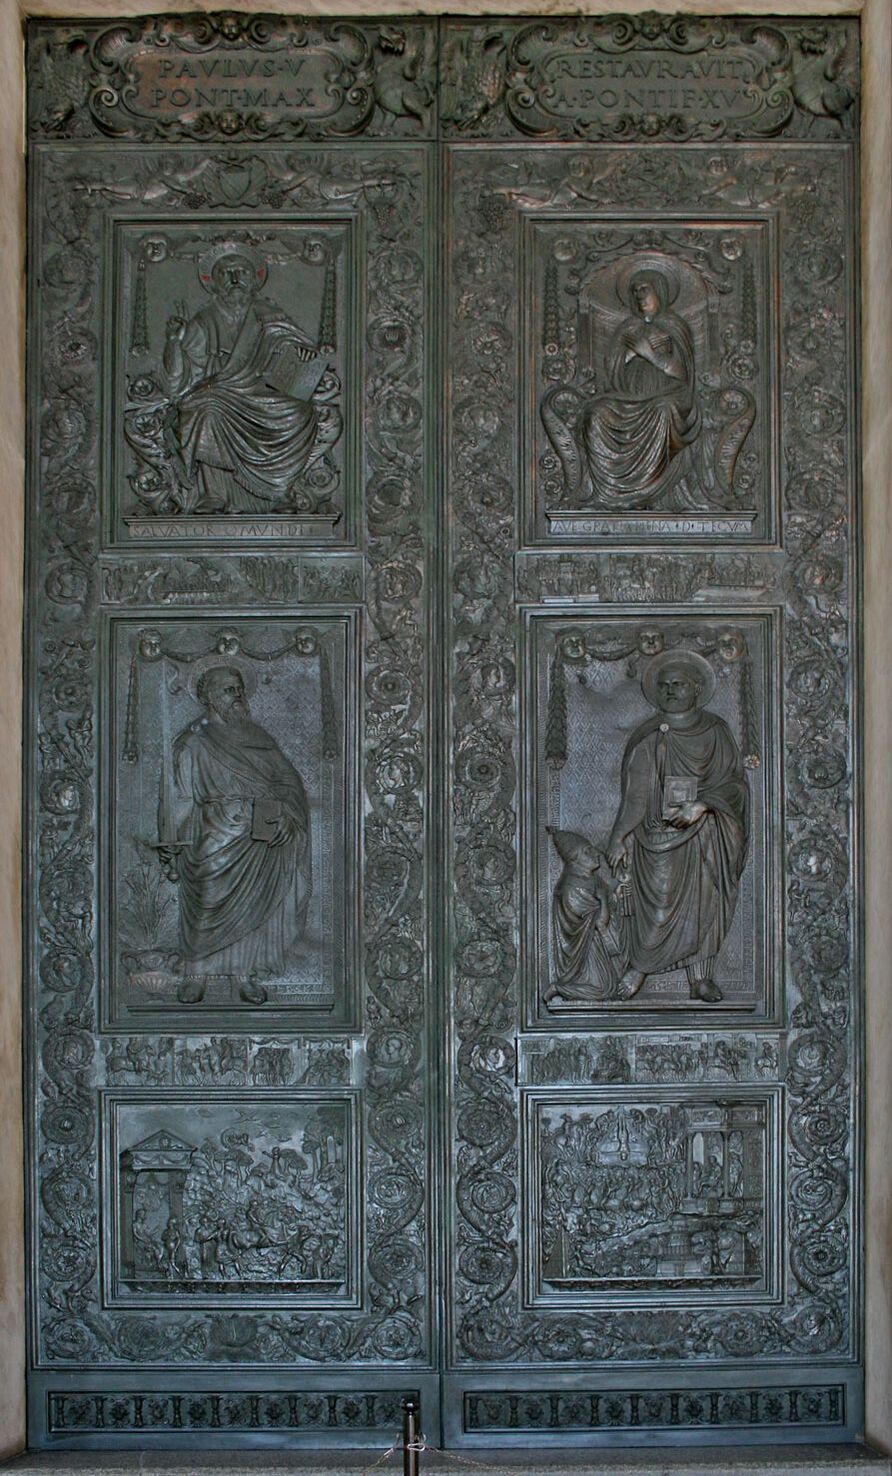 Filarete two bronze doors of Saint Peter's Basilica